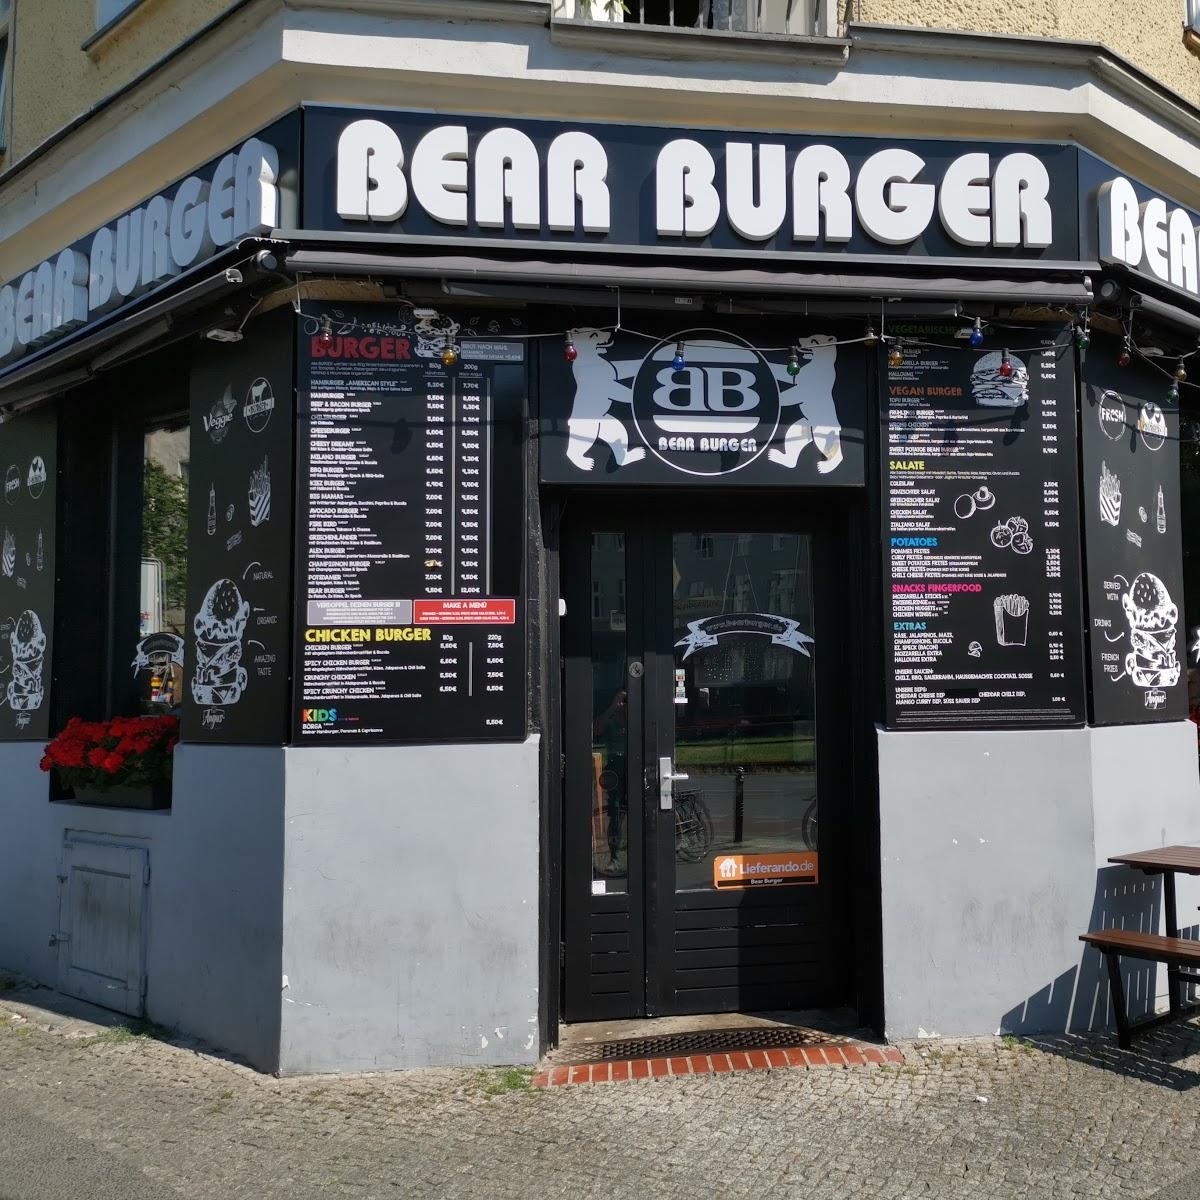 Restaurant "Bear Burger" in Berlin